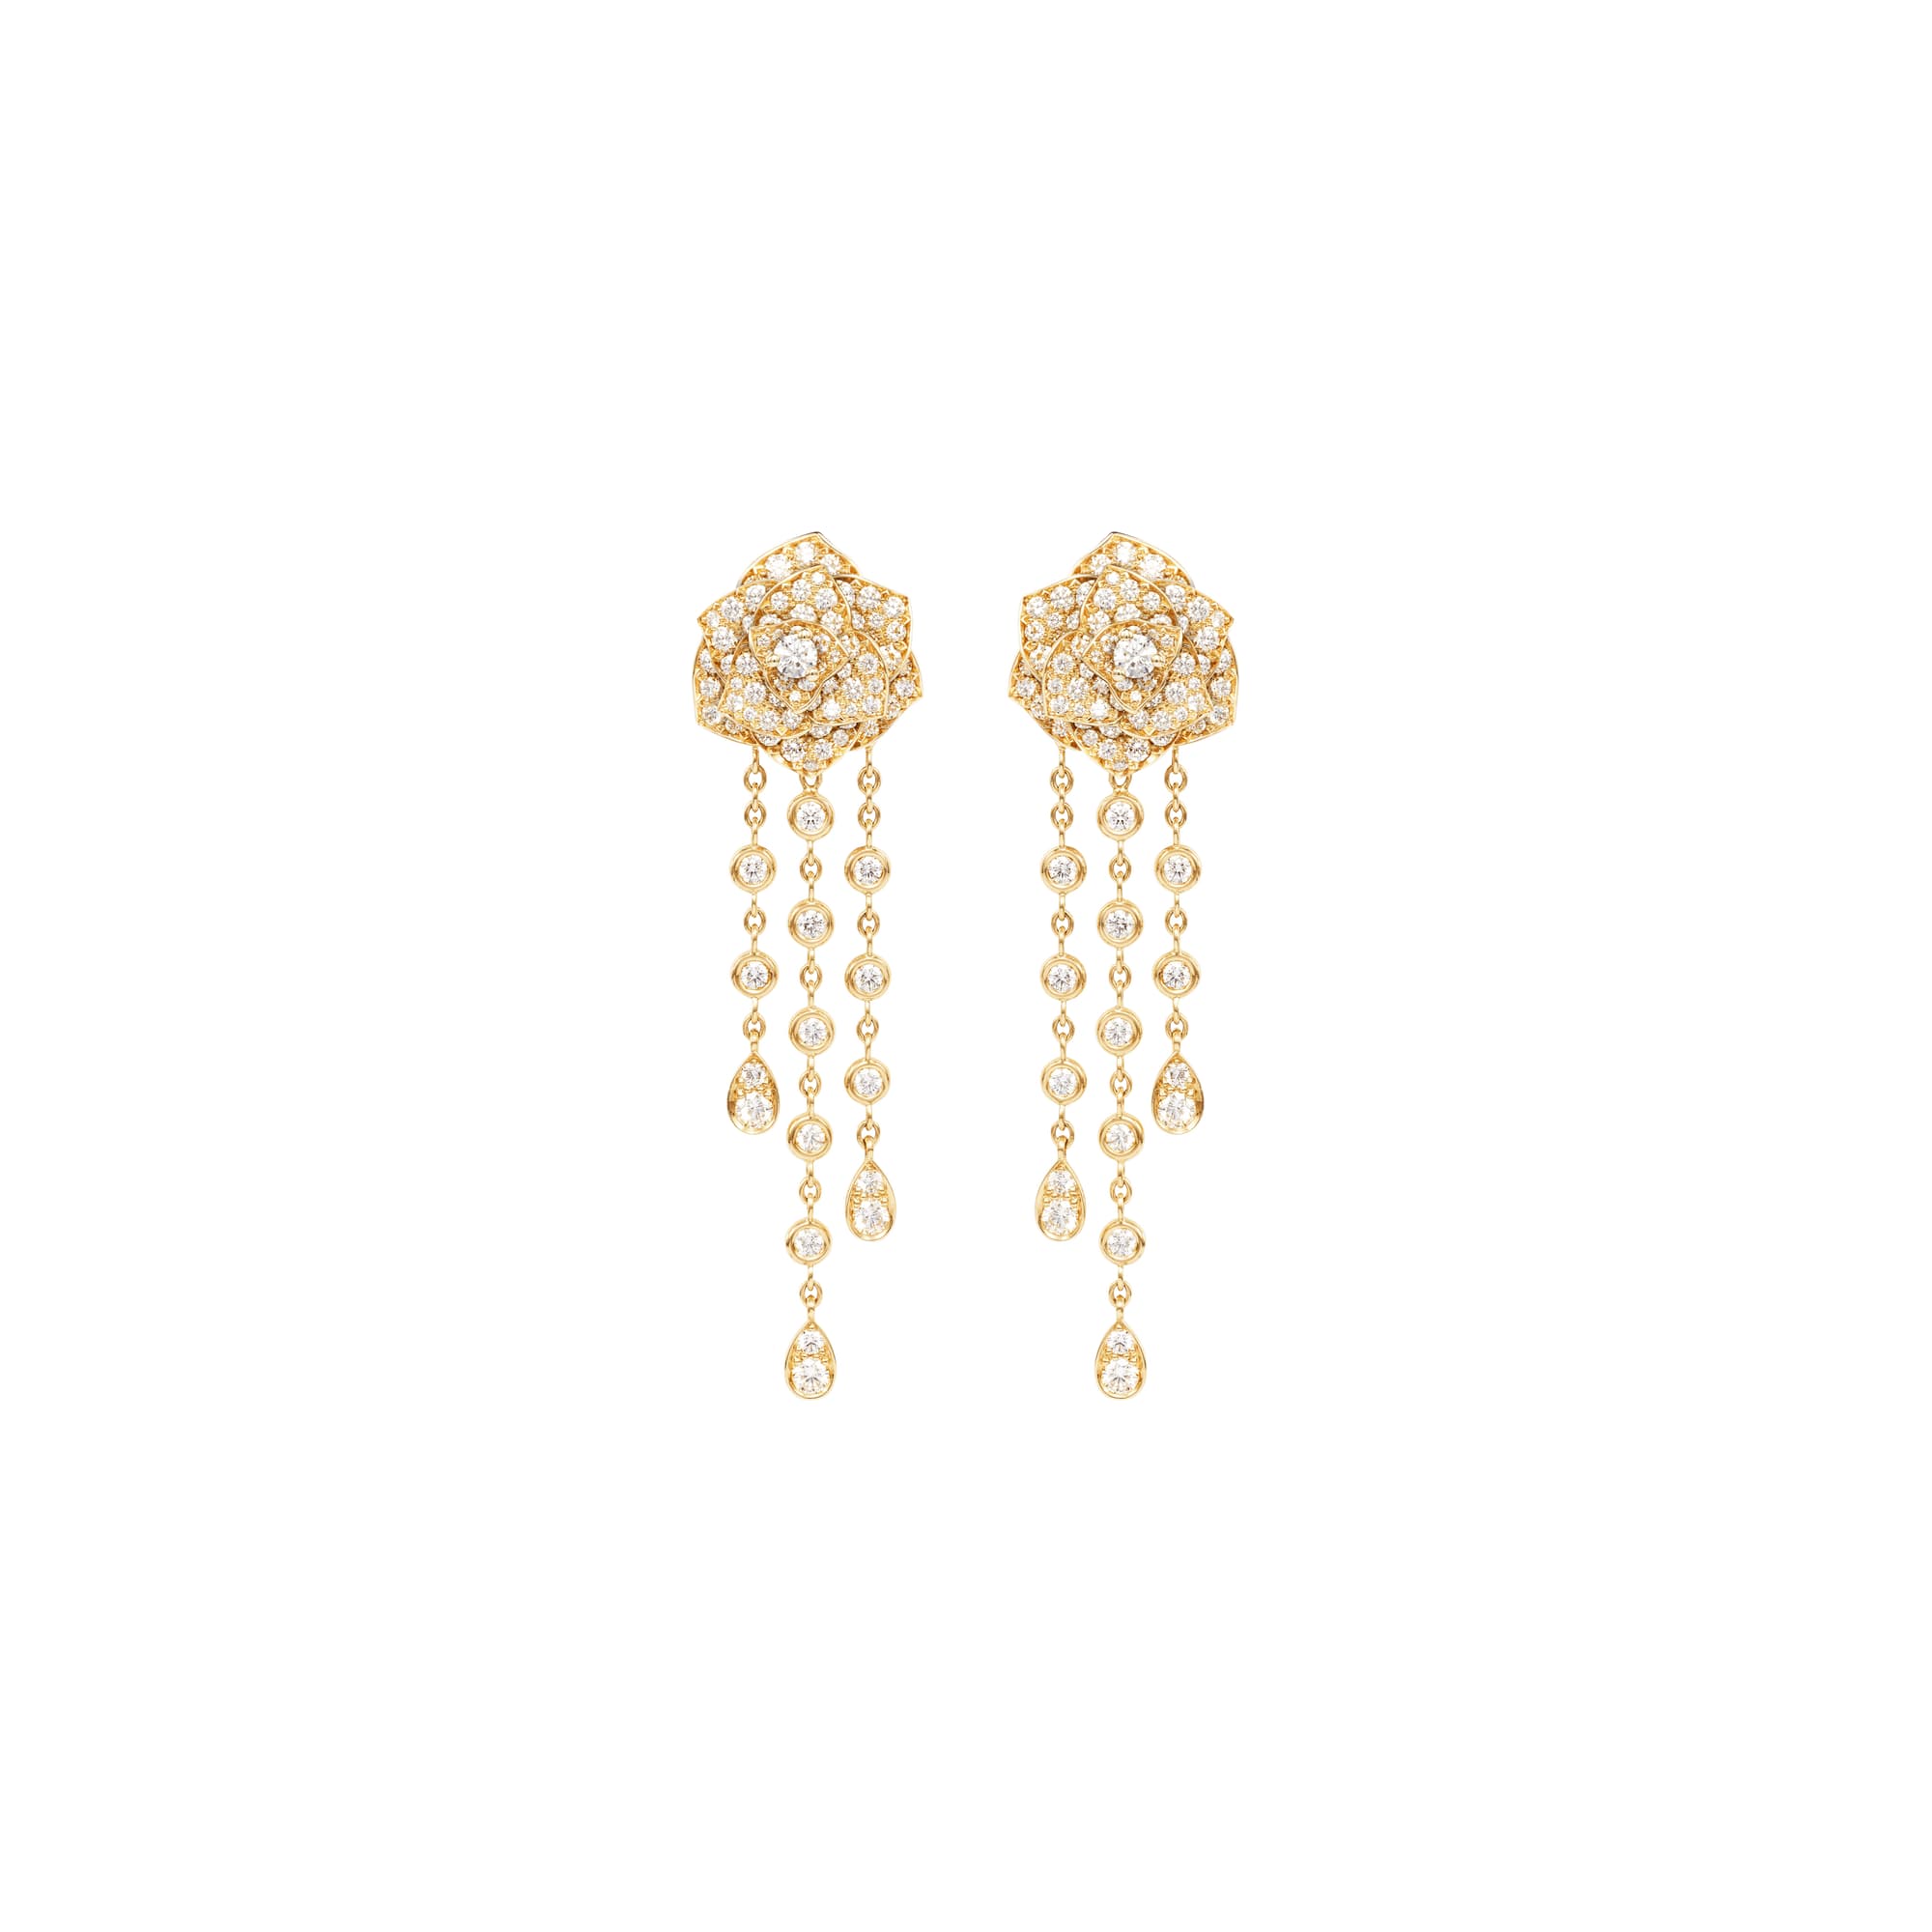 Rose gold Diamond Earrings G38U0075 - Piaget Luxury Jewelry Online